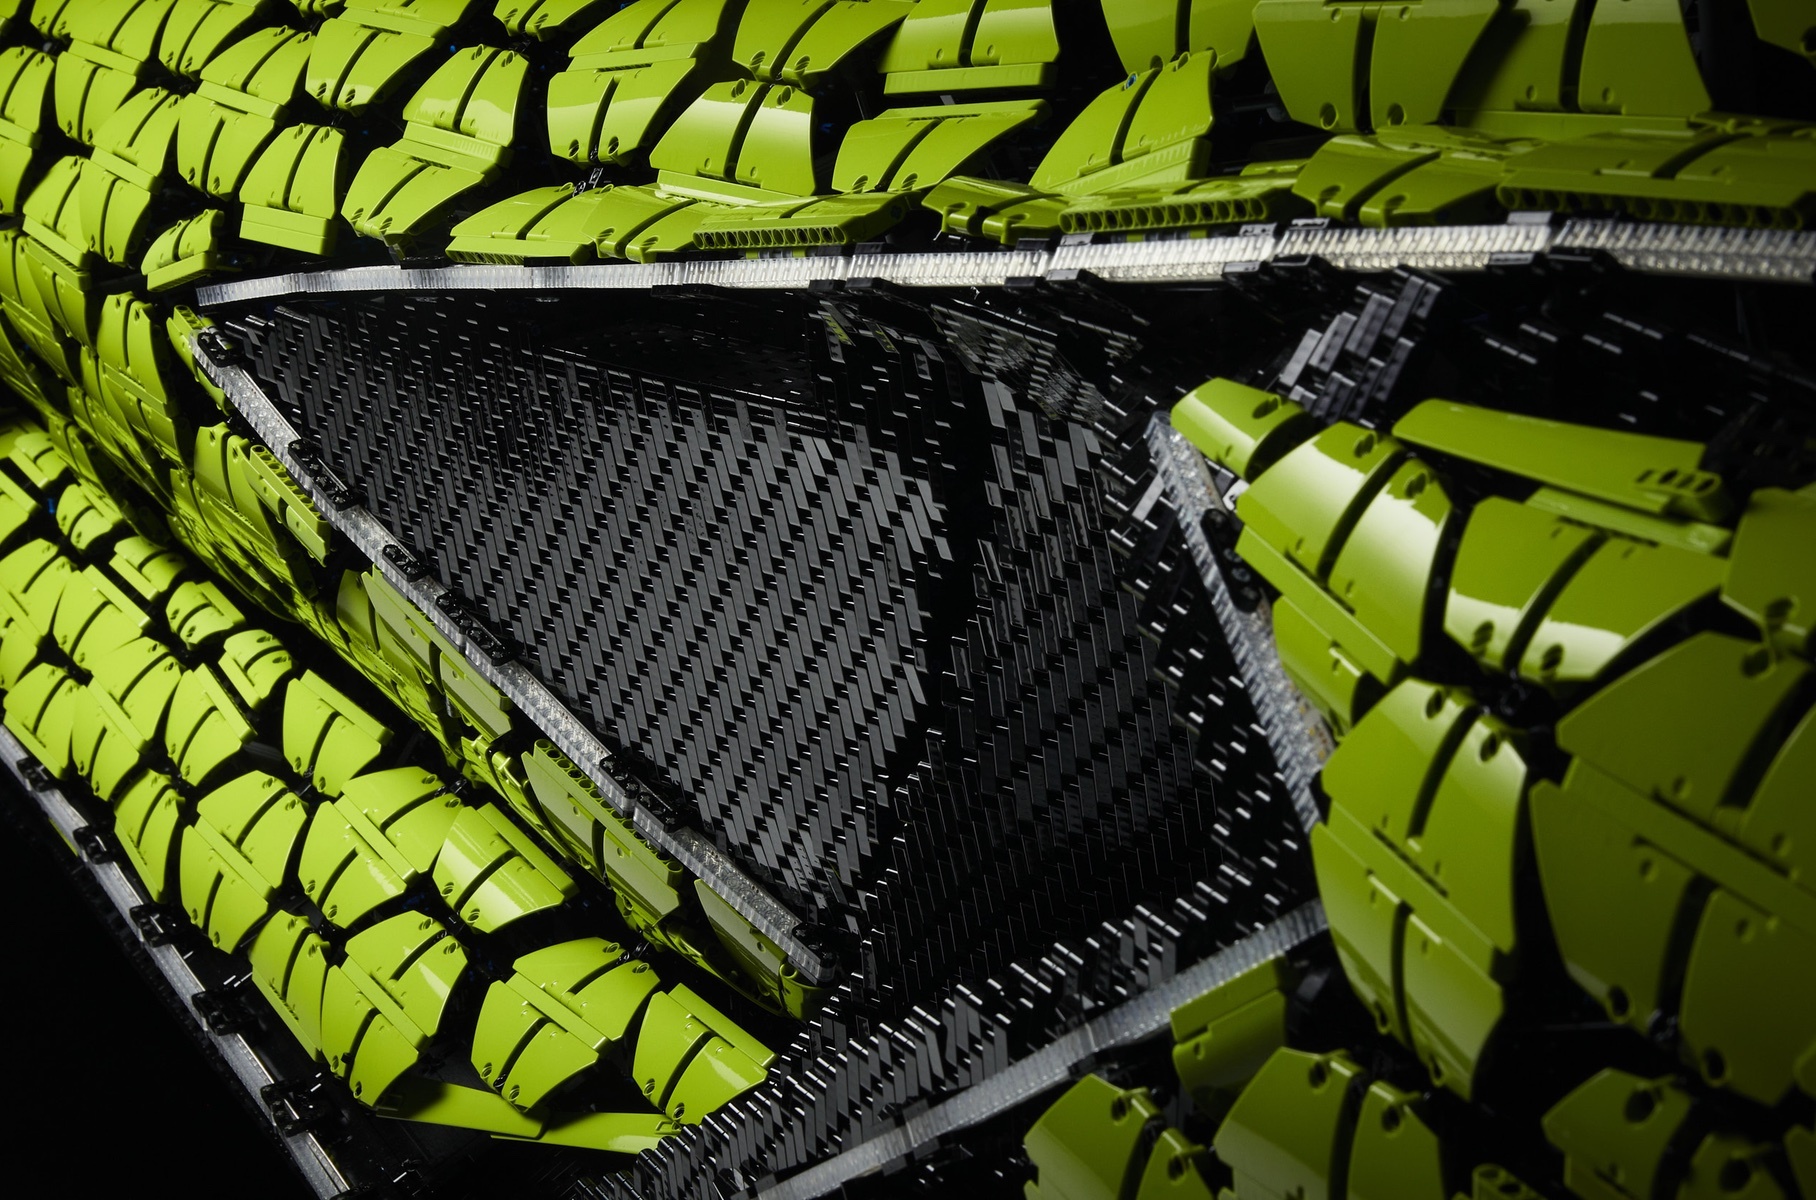 Посмотрите на полноразмерный Lamborghini Sian из 400 тысяч деталей Lego